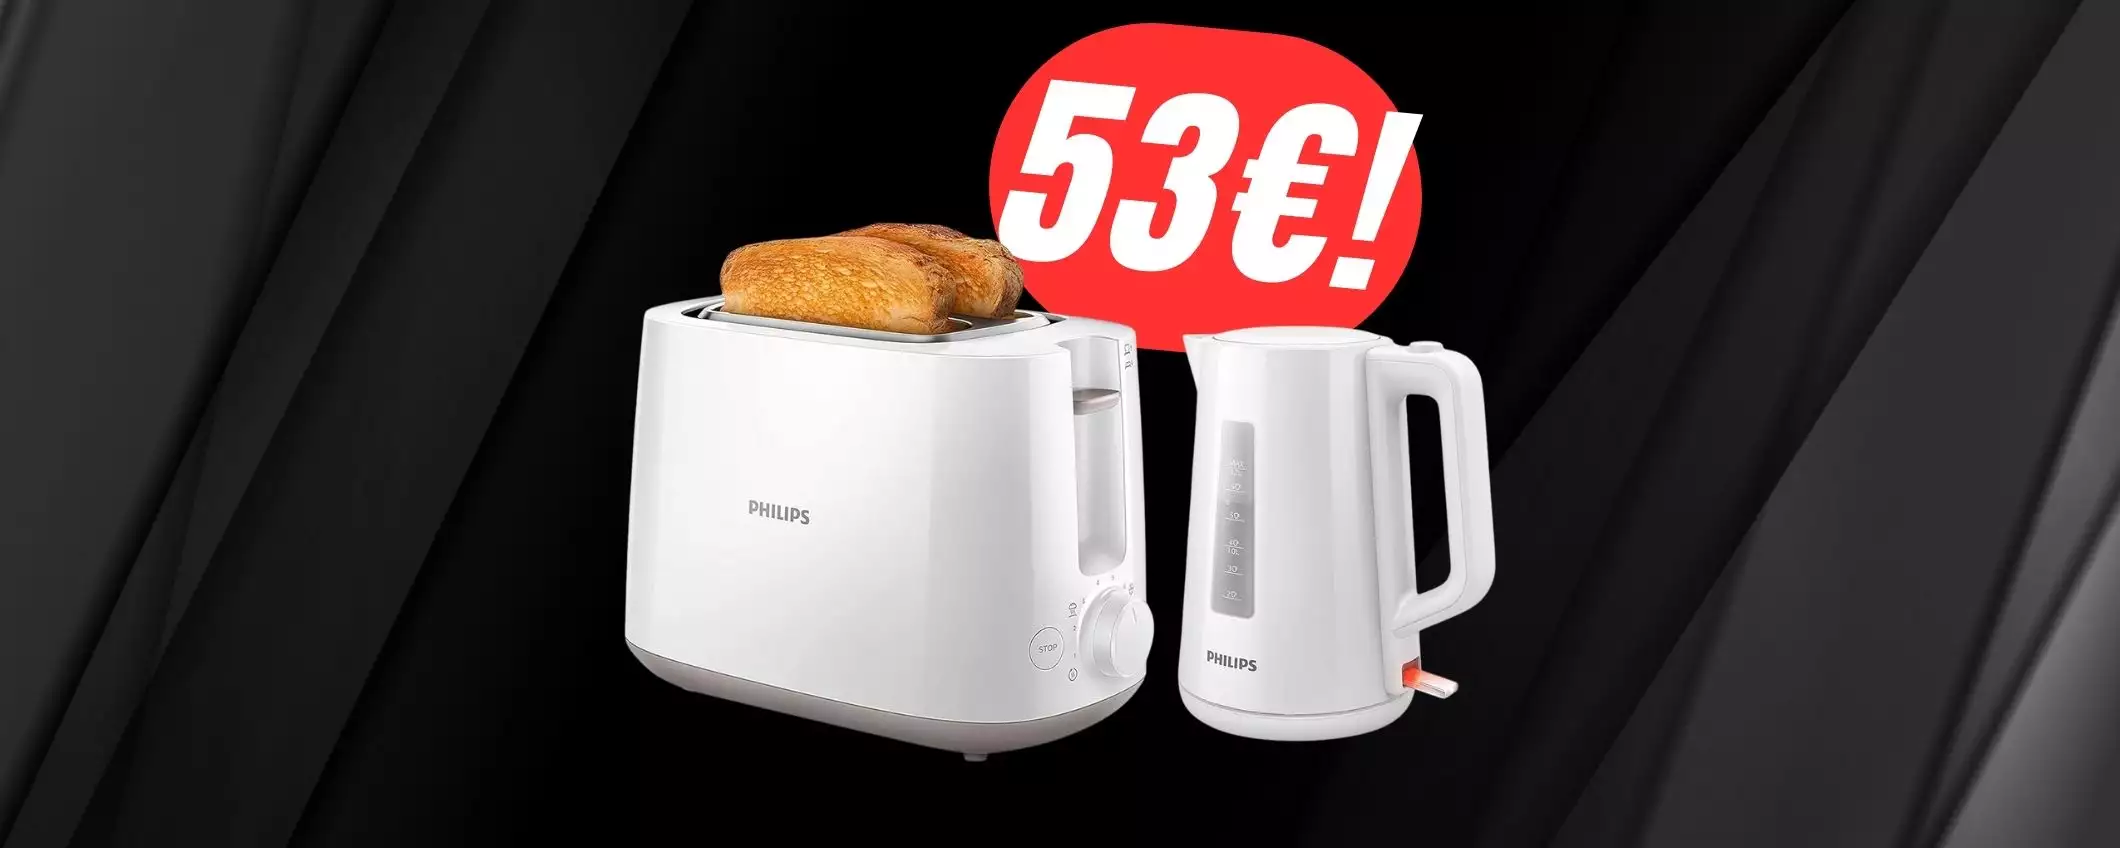 TOSTAPANE+BOLLITORE Philips a 53€: la combo da sogno per la tua cucina!